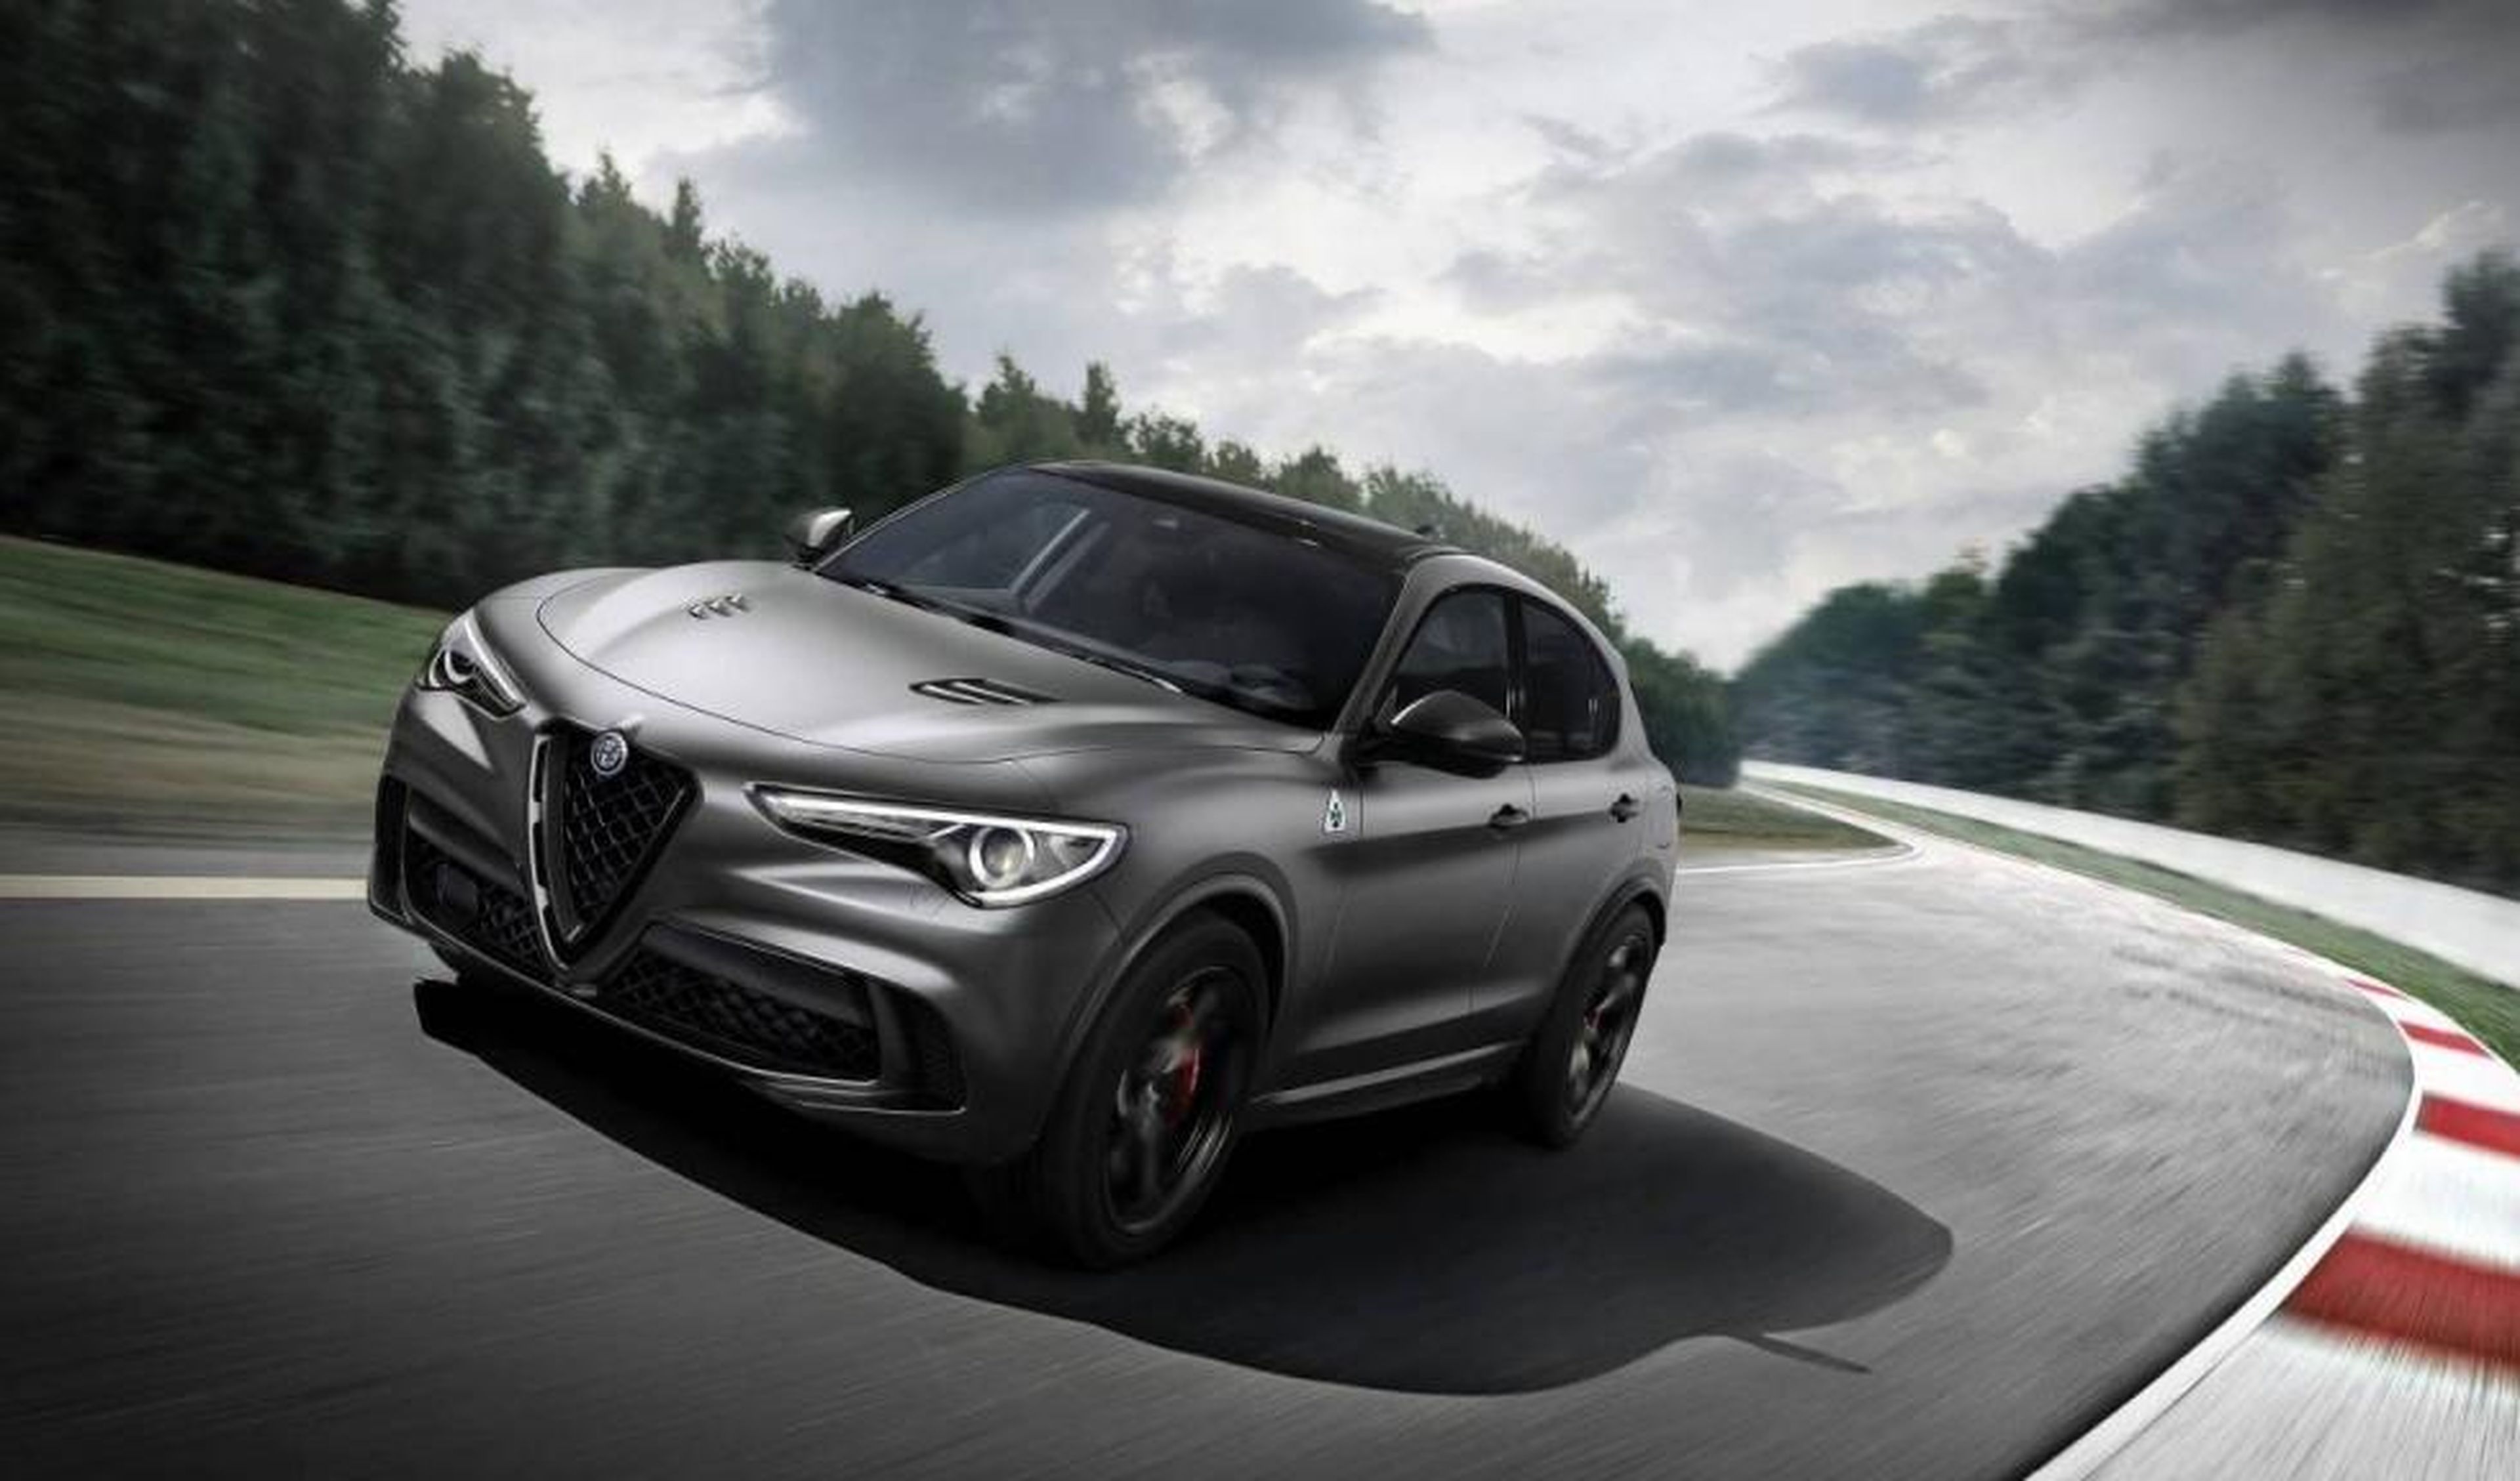 Alfa Romeo presentará un nuevo modelo en el Salón de Ginebra 2019